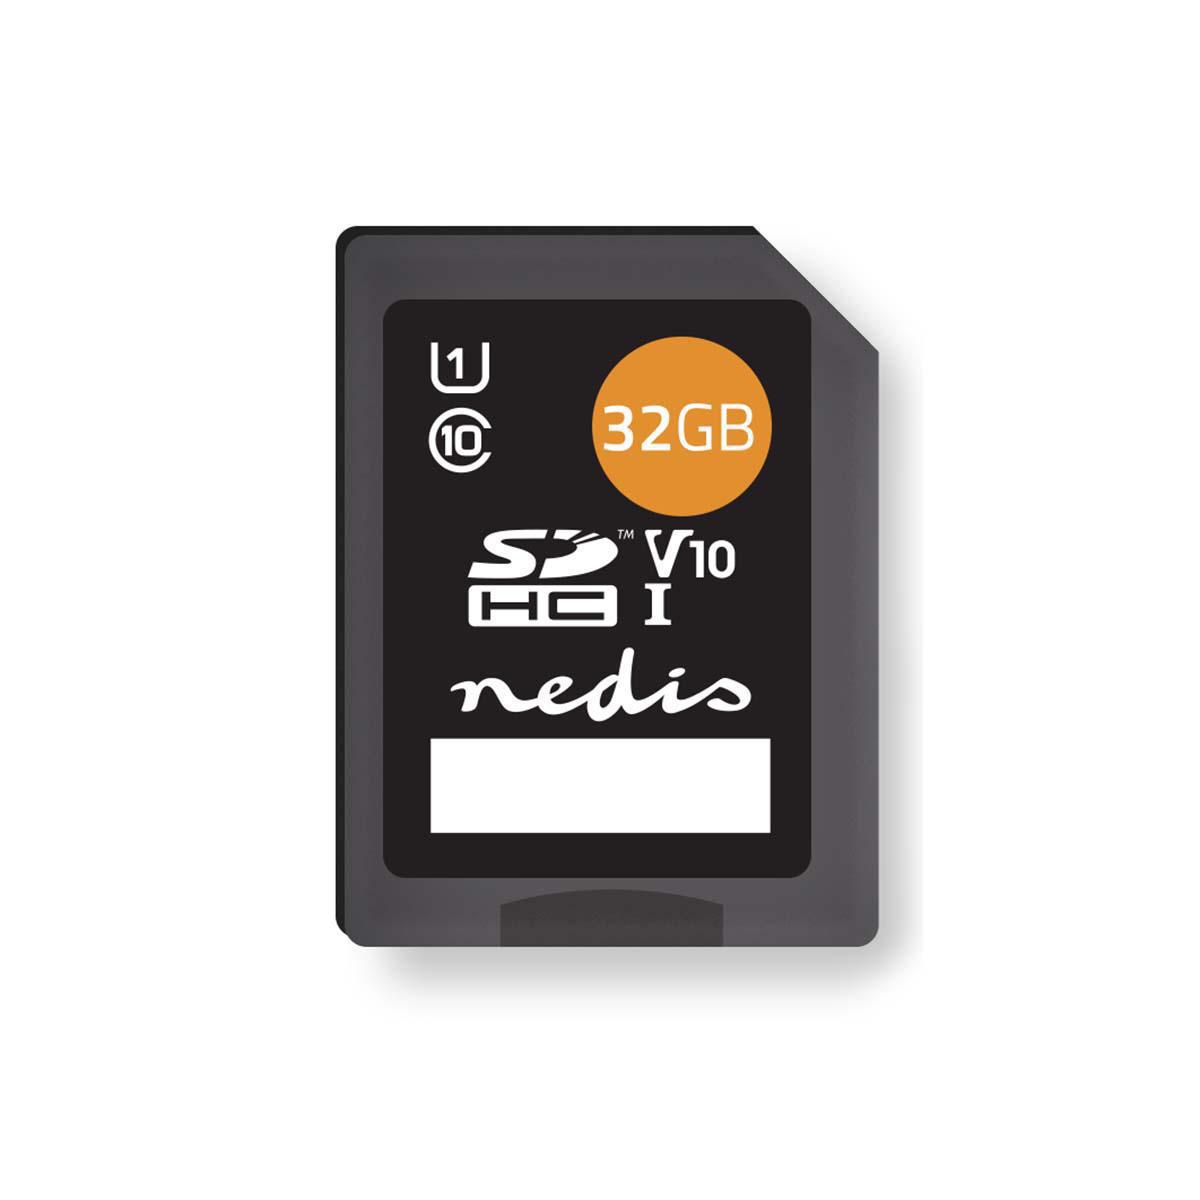 NEDIS MSDC32100BK, SDHC Speicherkarte, 32 GB